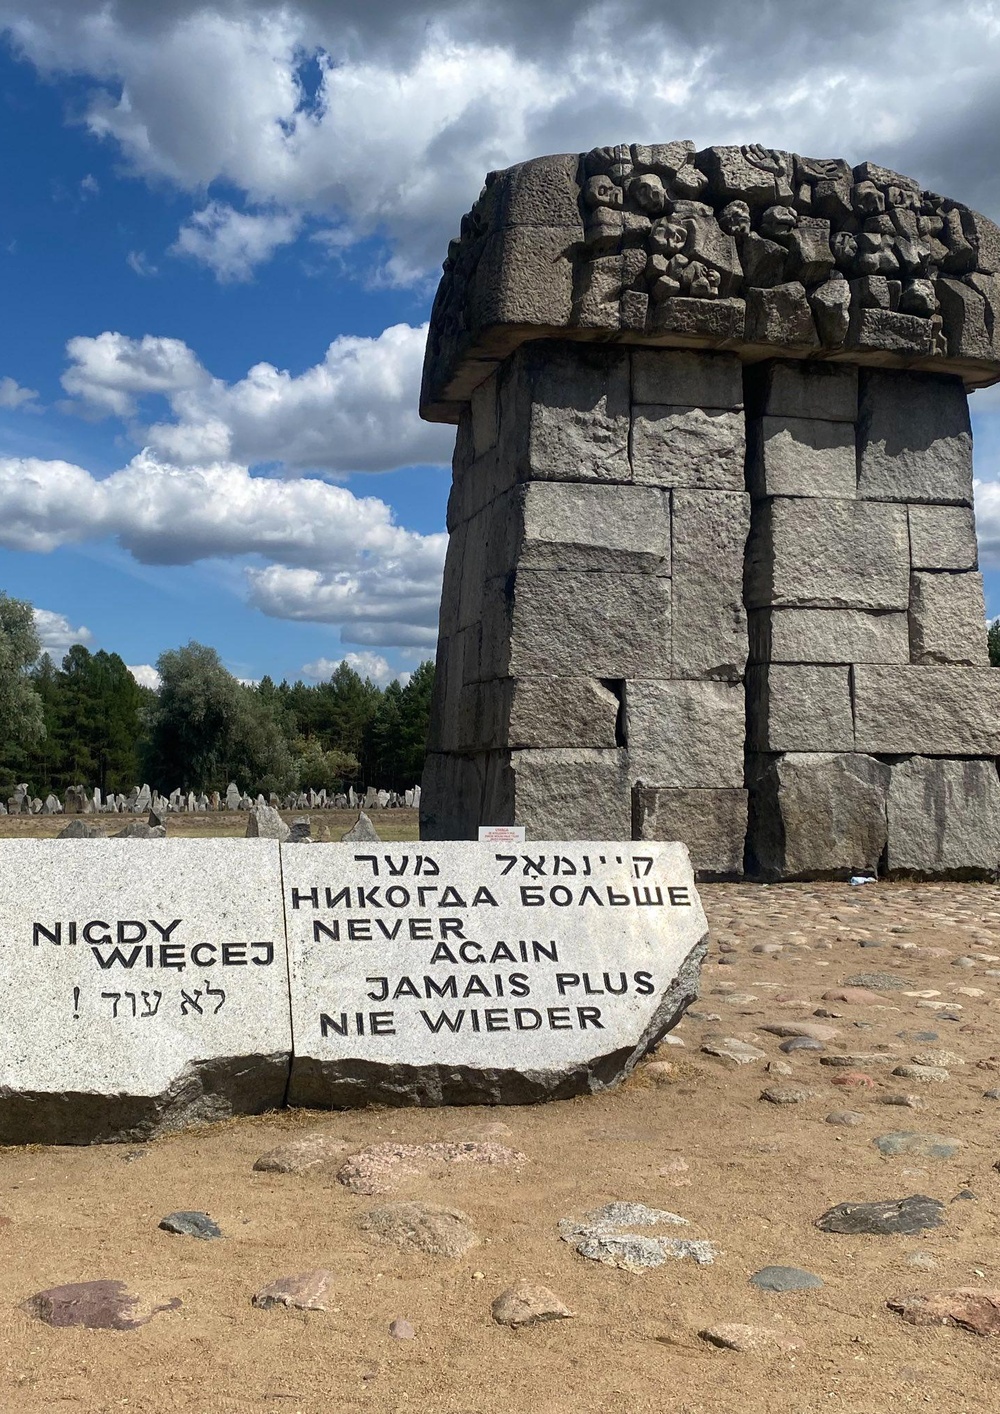 Erinnerungsort am ehemaligen KZ Treblinka.